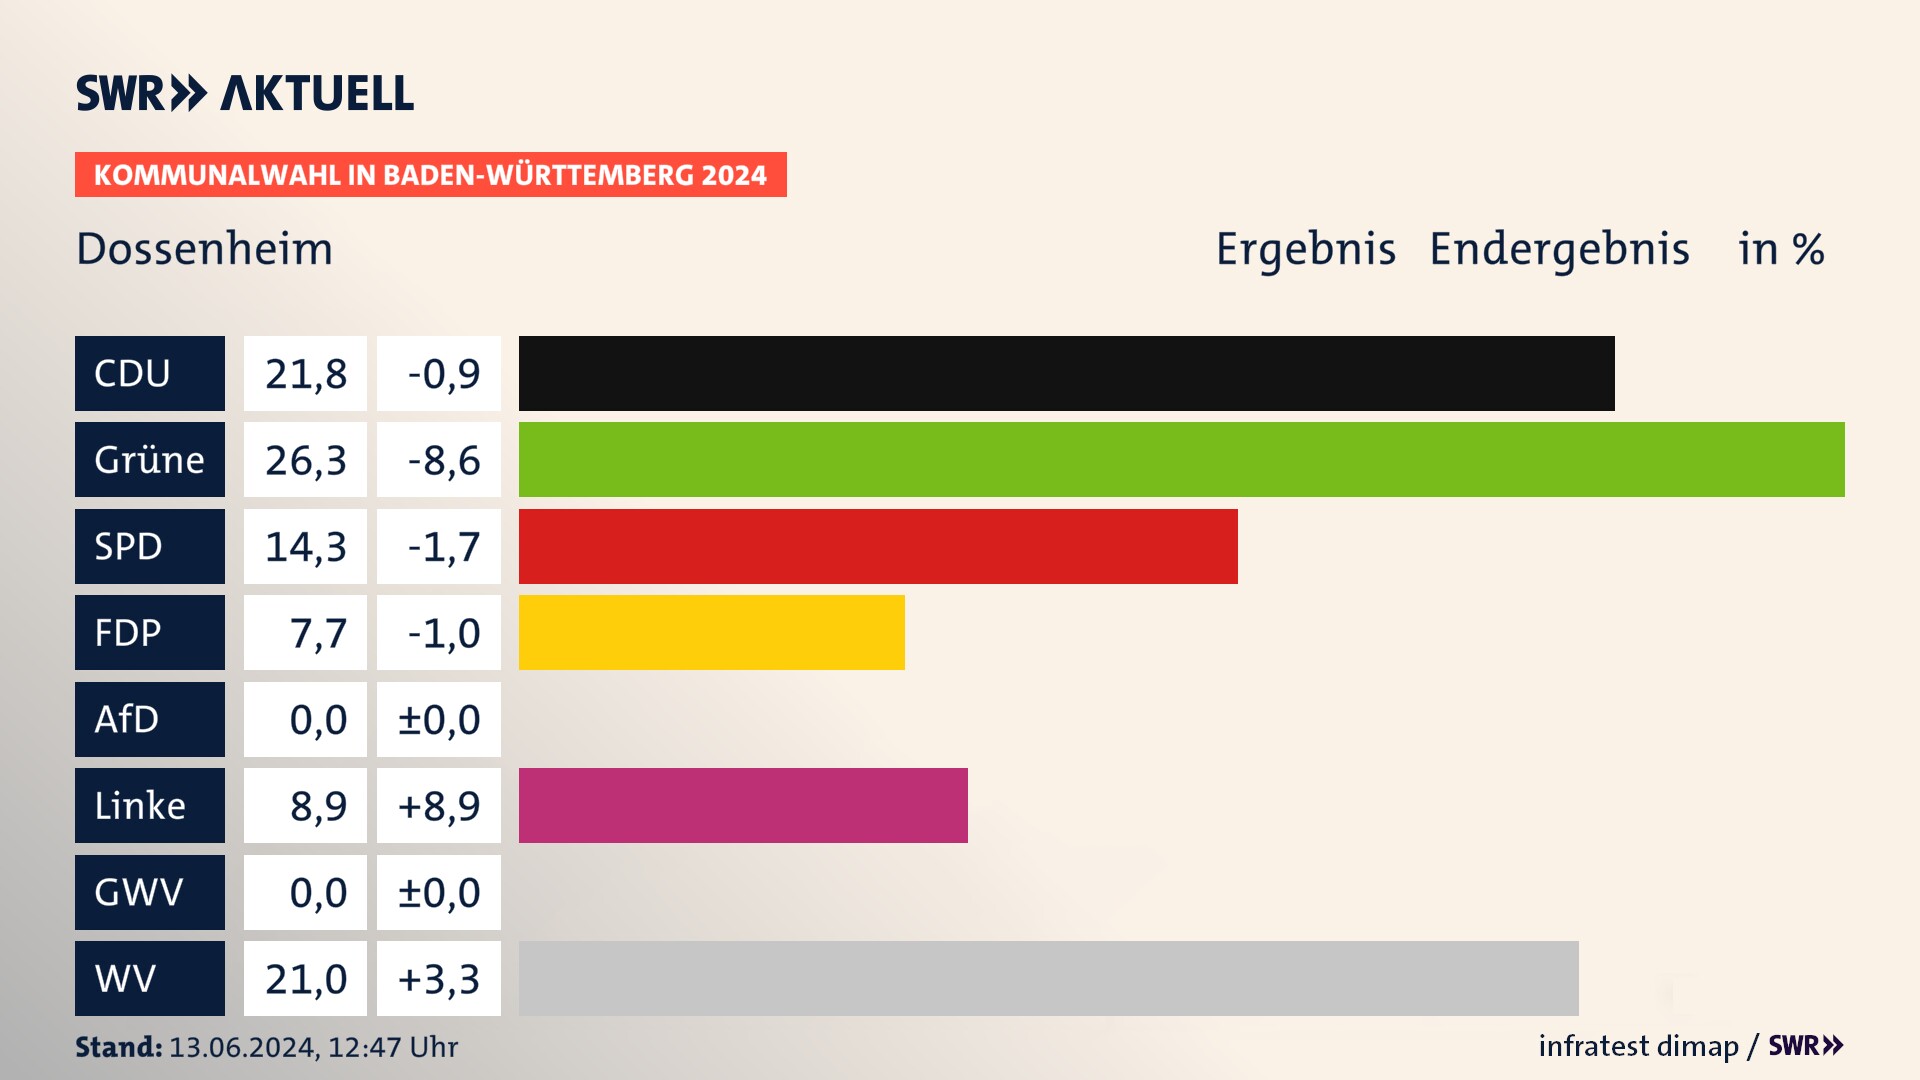 Kommunalwahl 2024 Endergebnis Zweitstimme für Dossenheim. In Dossenheim erzielt die CDU 21,8 Prozent der gültigen  Stimmen. Die Grünen landen bei 26,3 Prozent. Die SPD erreicht 14,3 Prozent. Die FDP kommt auf 7,7 Prozent. Die Linke landet bei 8,9 Prozent. Die Wählervereinigungen erreichen 21,0 Prozent.